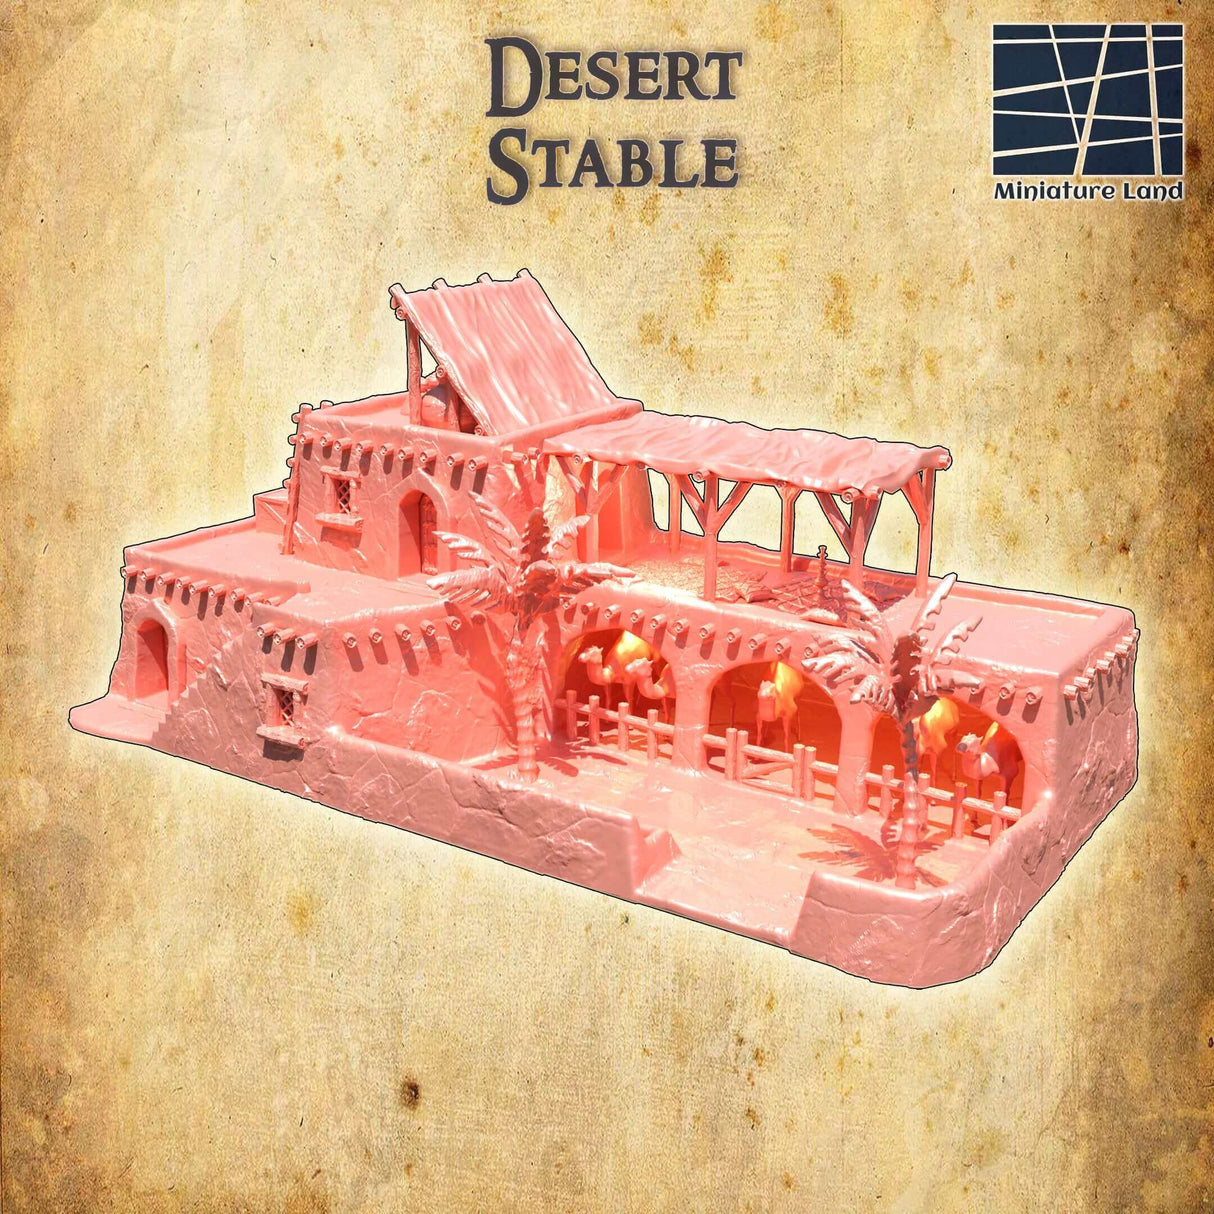 Detailansicht des Wüstenstalls als Tabletop-Gebäude